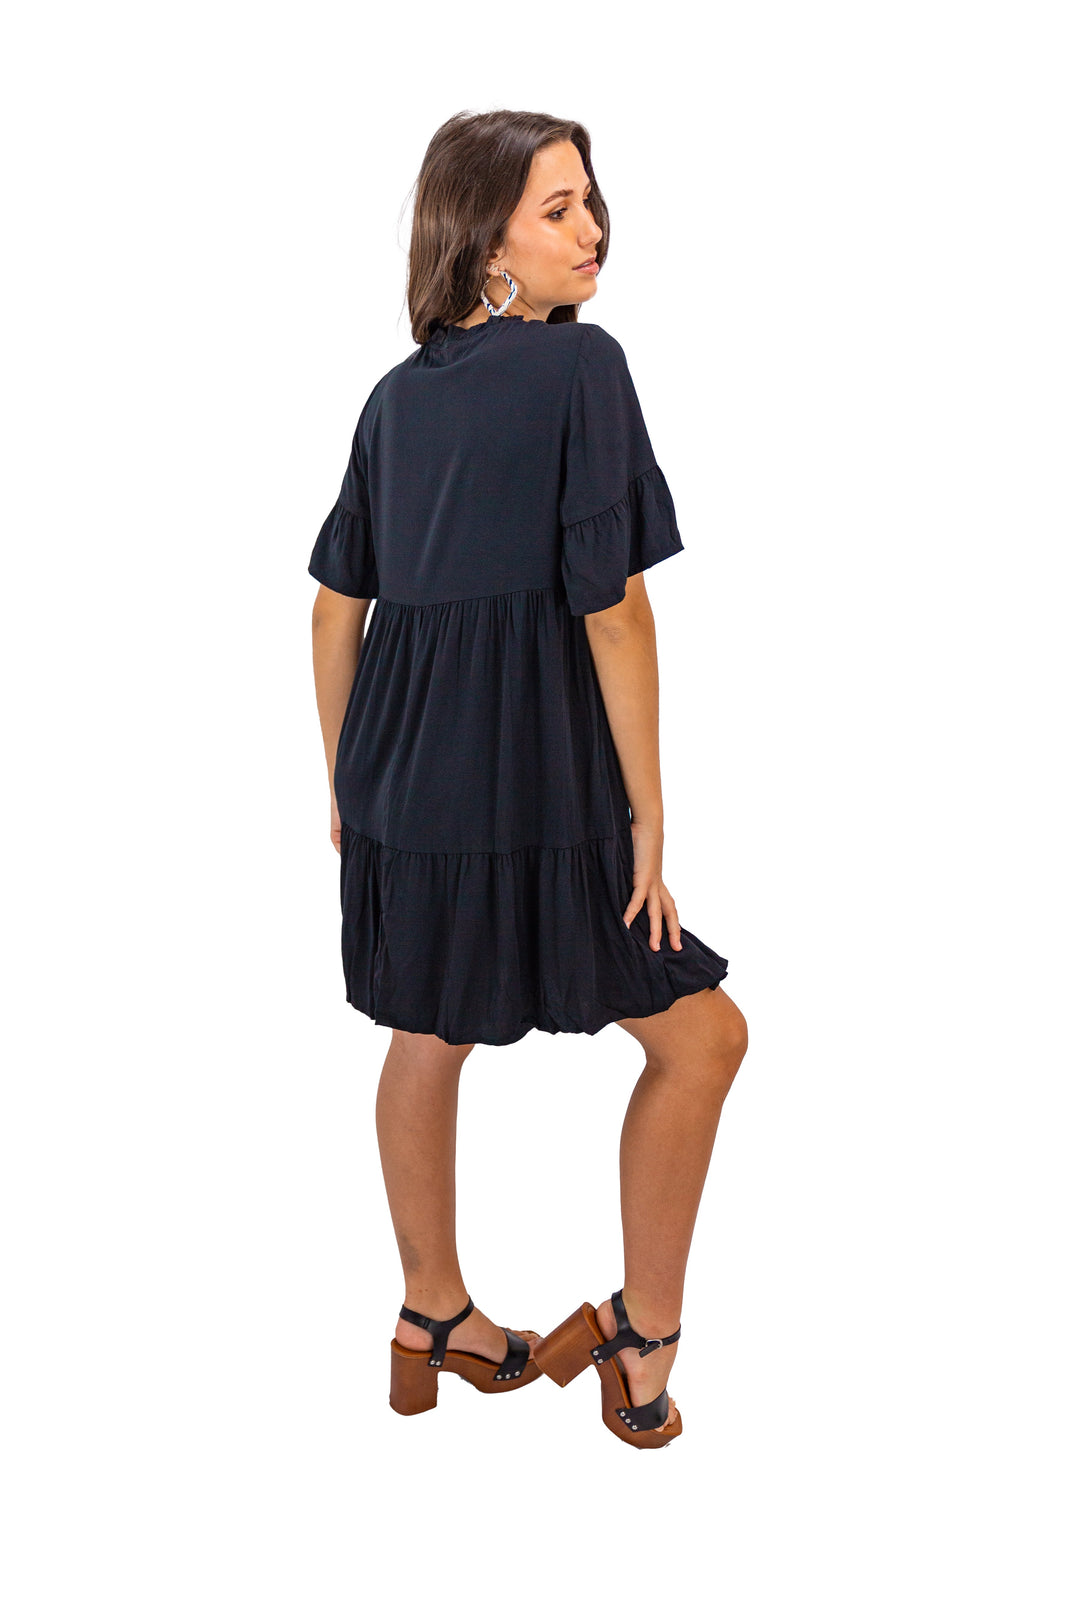 Black Flowy V-neck Mini Dress for Women's